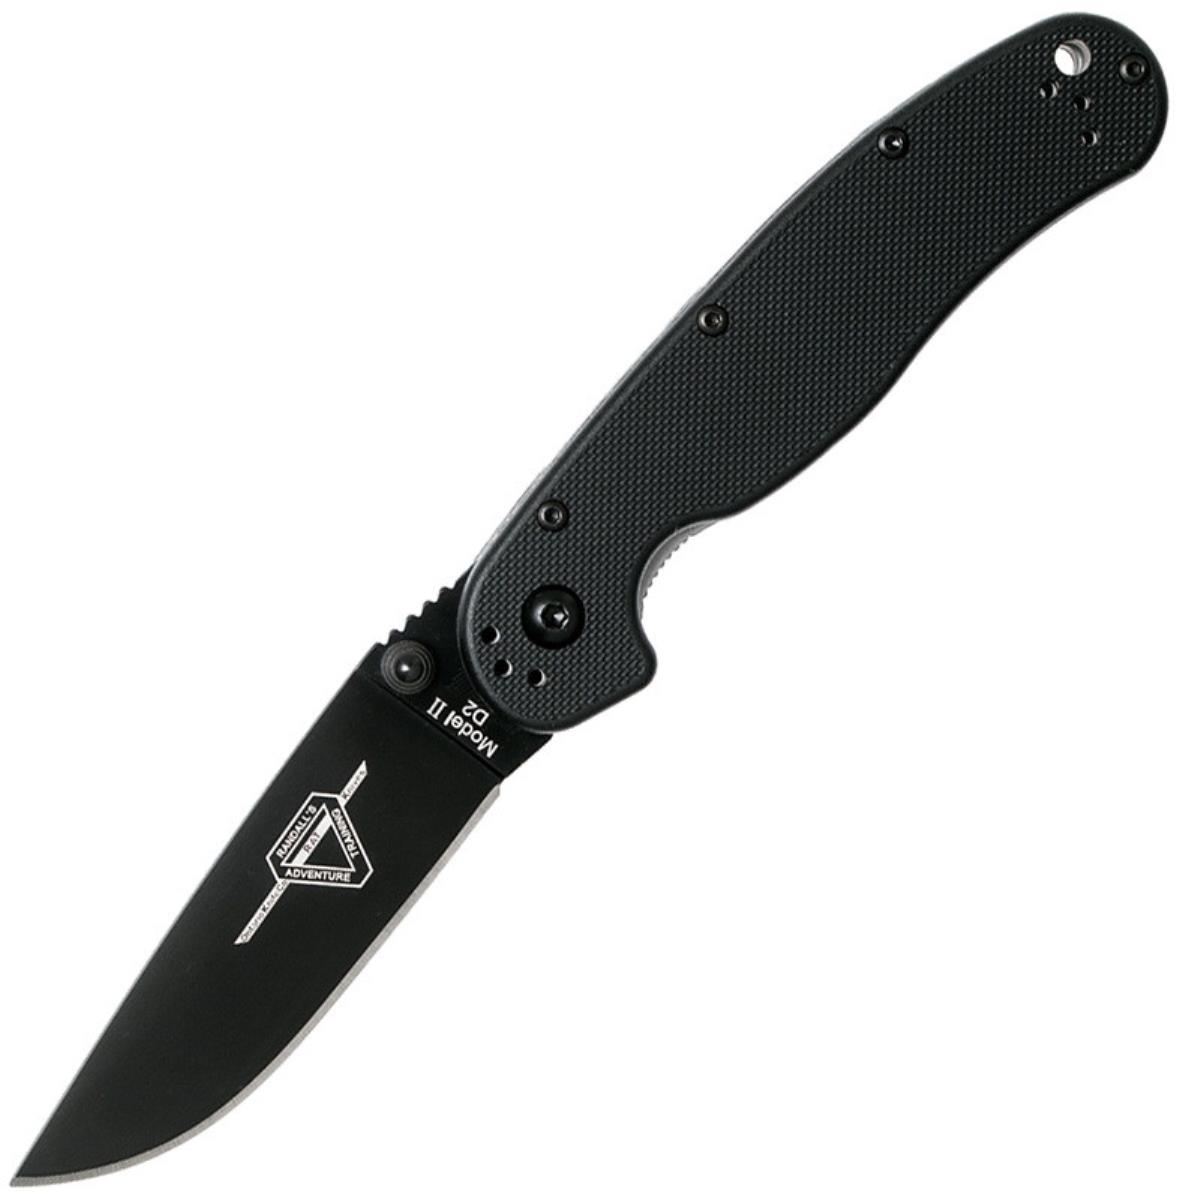 Нож RAT II складн.,чёрная нейлоновая рукоять, клинок AUS8 чёрное покрытие (8861)  ONTARIO складной нож ontario joe pardue utilitac ii black tanto blade highly textured handle